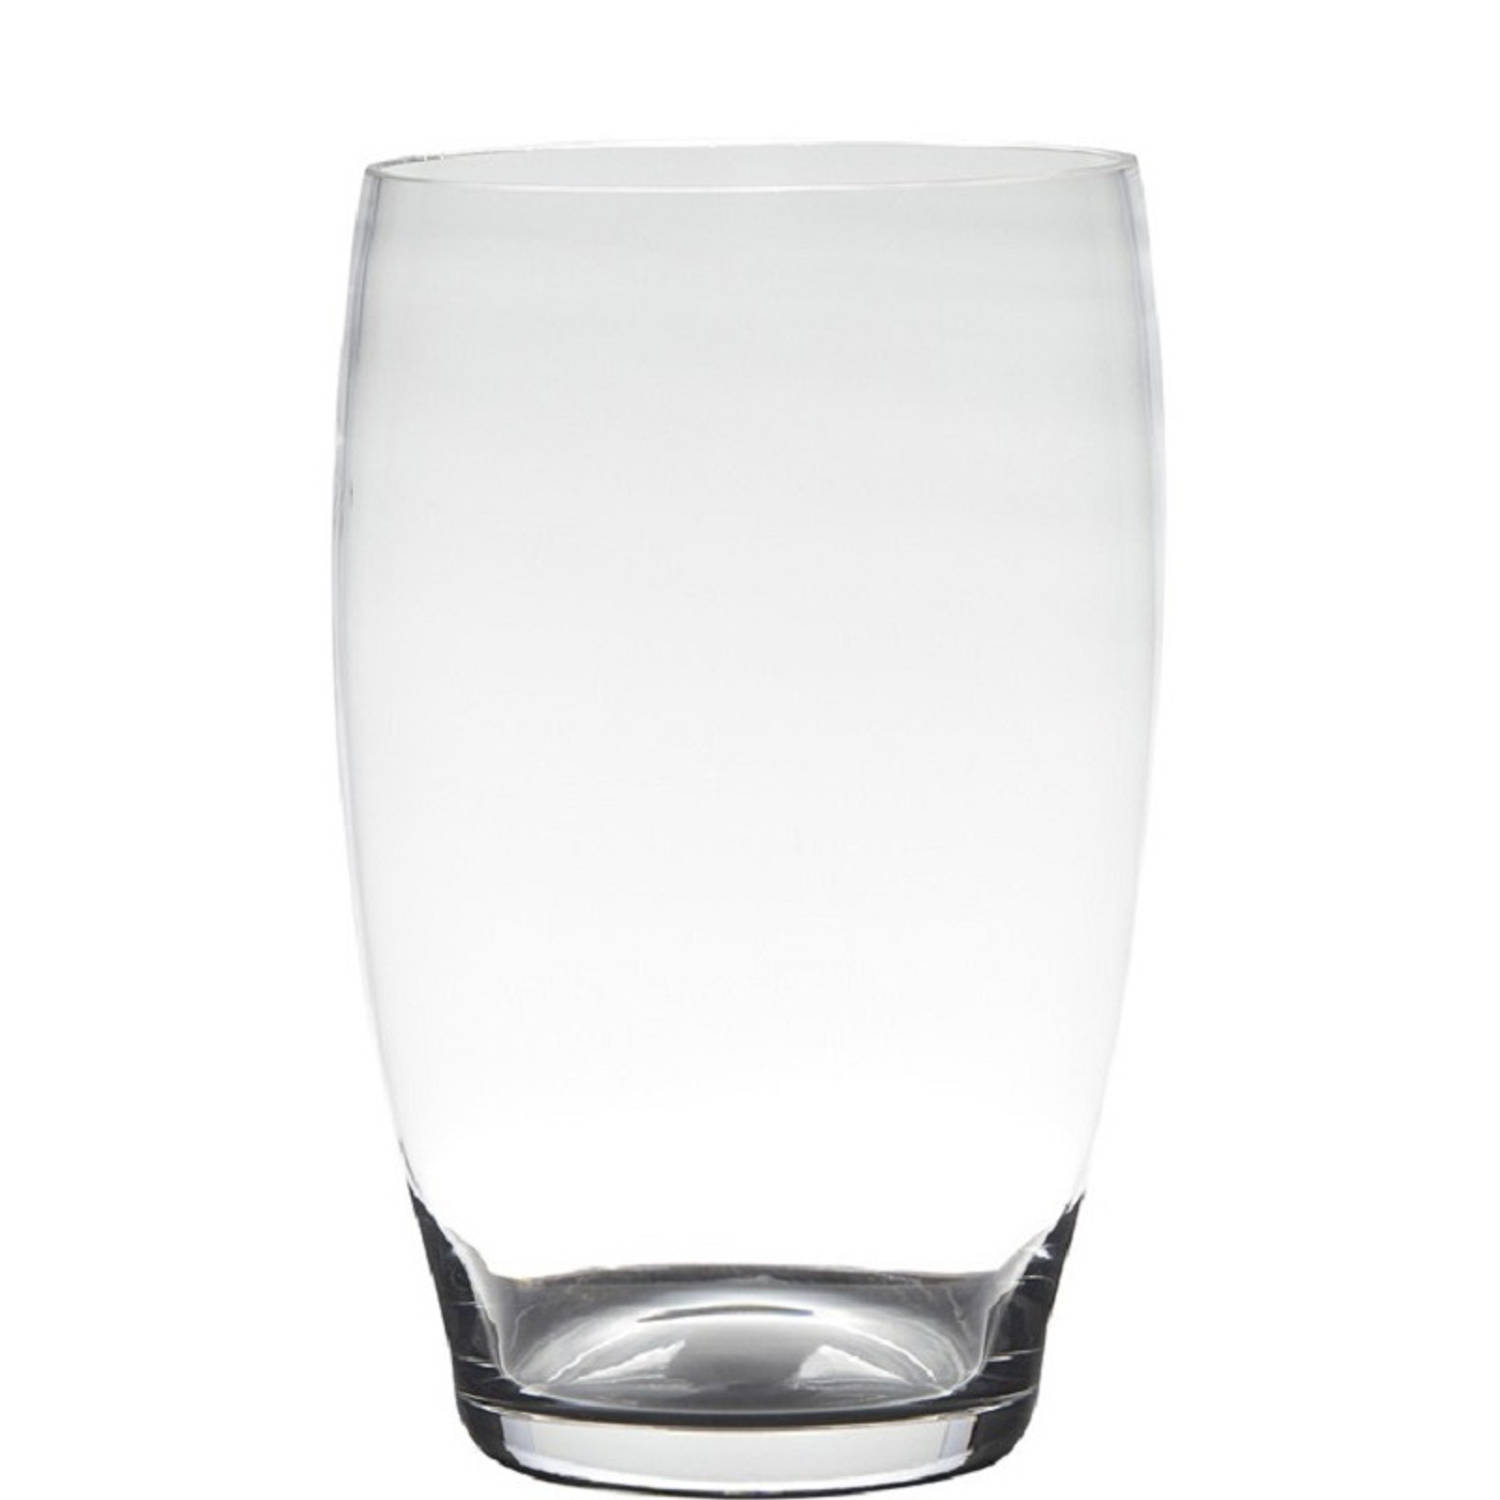 Hakbijl glass Vaas Naomi H25 D15